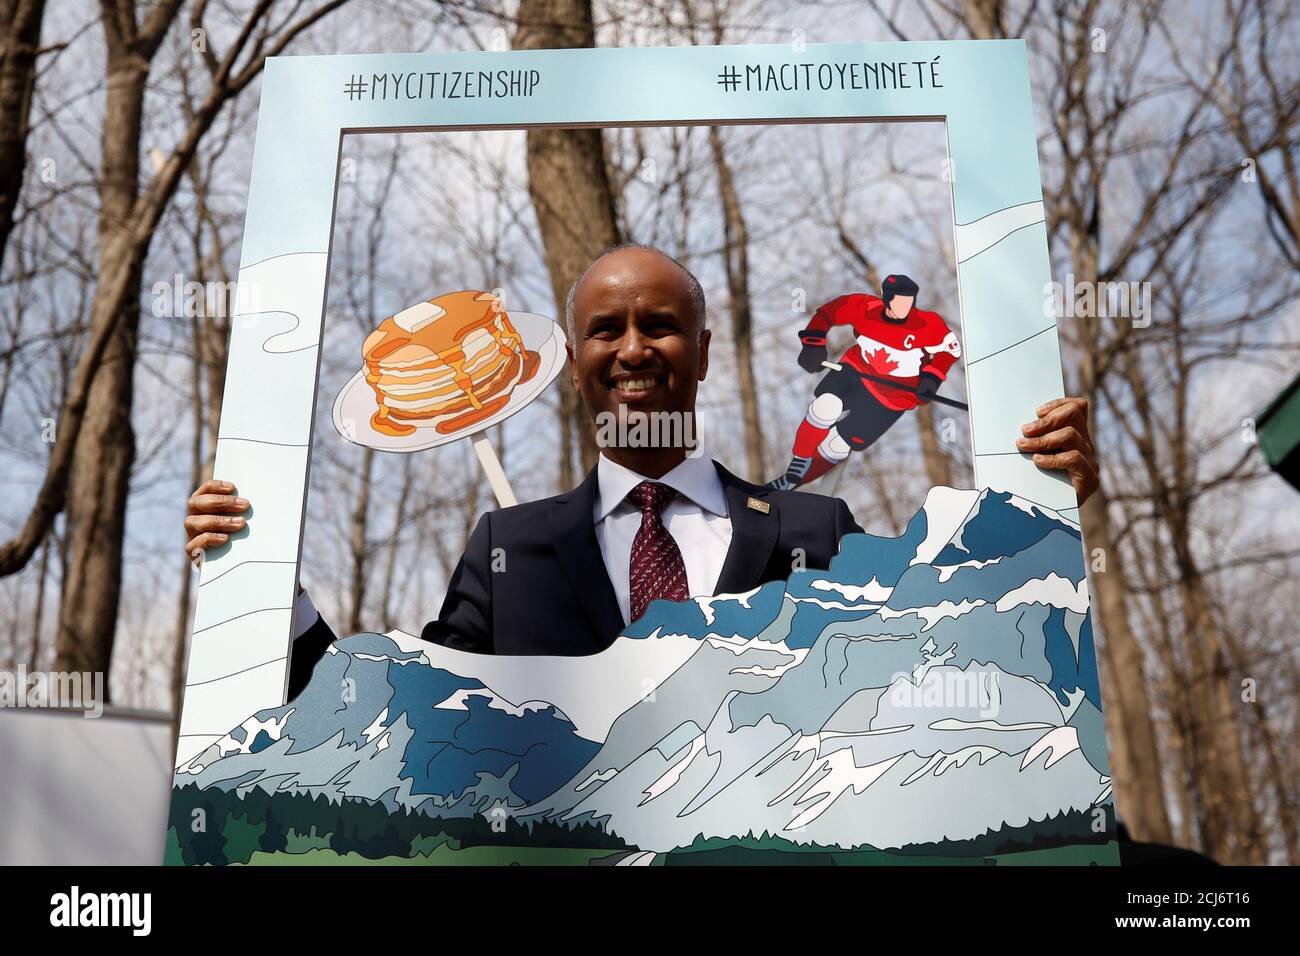 El Ministro de Inmigración de Canadá, Ahmed Hussen, hace una presentación de fotos después de una ceremonia de ciudadanía en el Vanier Sugar Shack en Ottawa, Ontario, Canadá, el 11 de abril de 2018. REUTERS/Chris Wattie Foto de stock